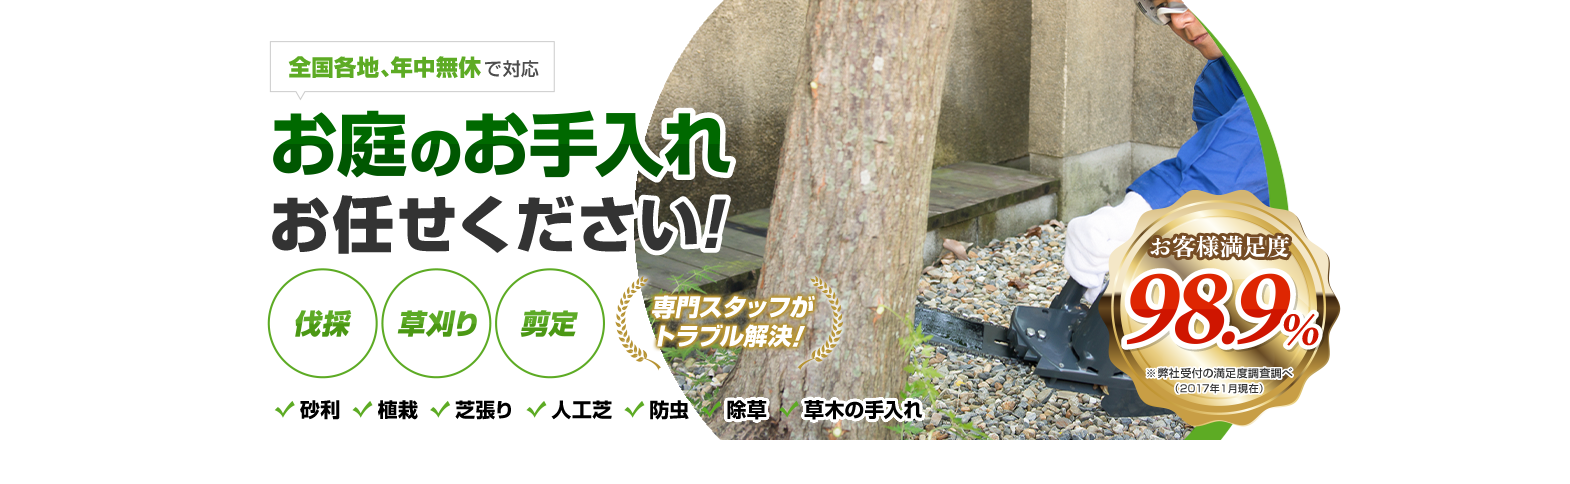 日本全国、年中無休で対応 お庭のお手入れお任せください！伐採 草刈り 剪定 専門スタッフがトラブル解決！ お客様満足度98.9%